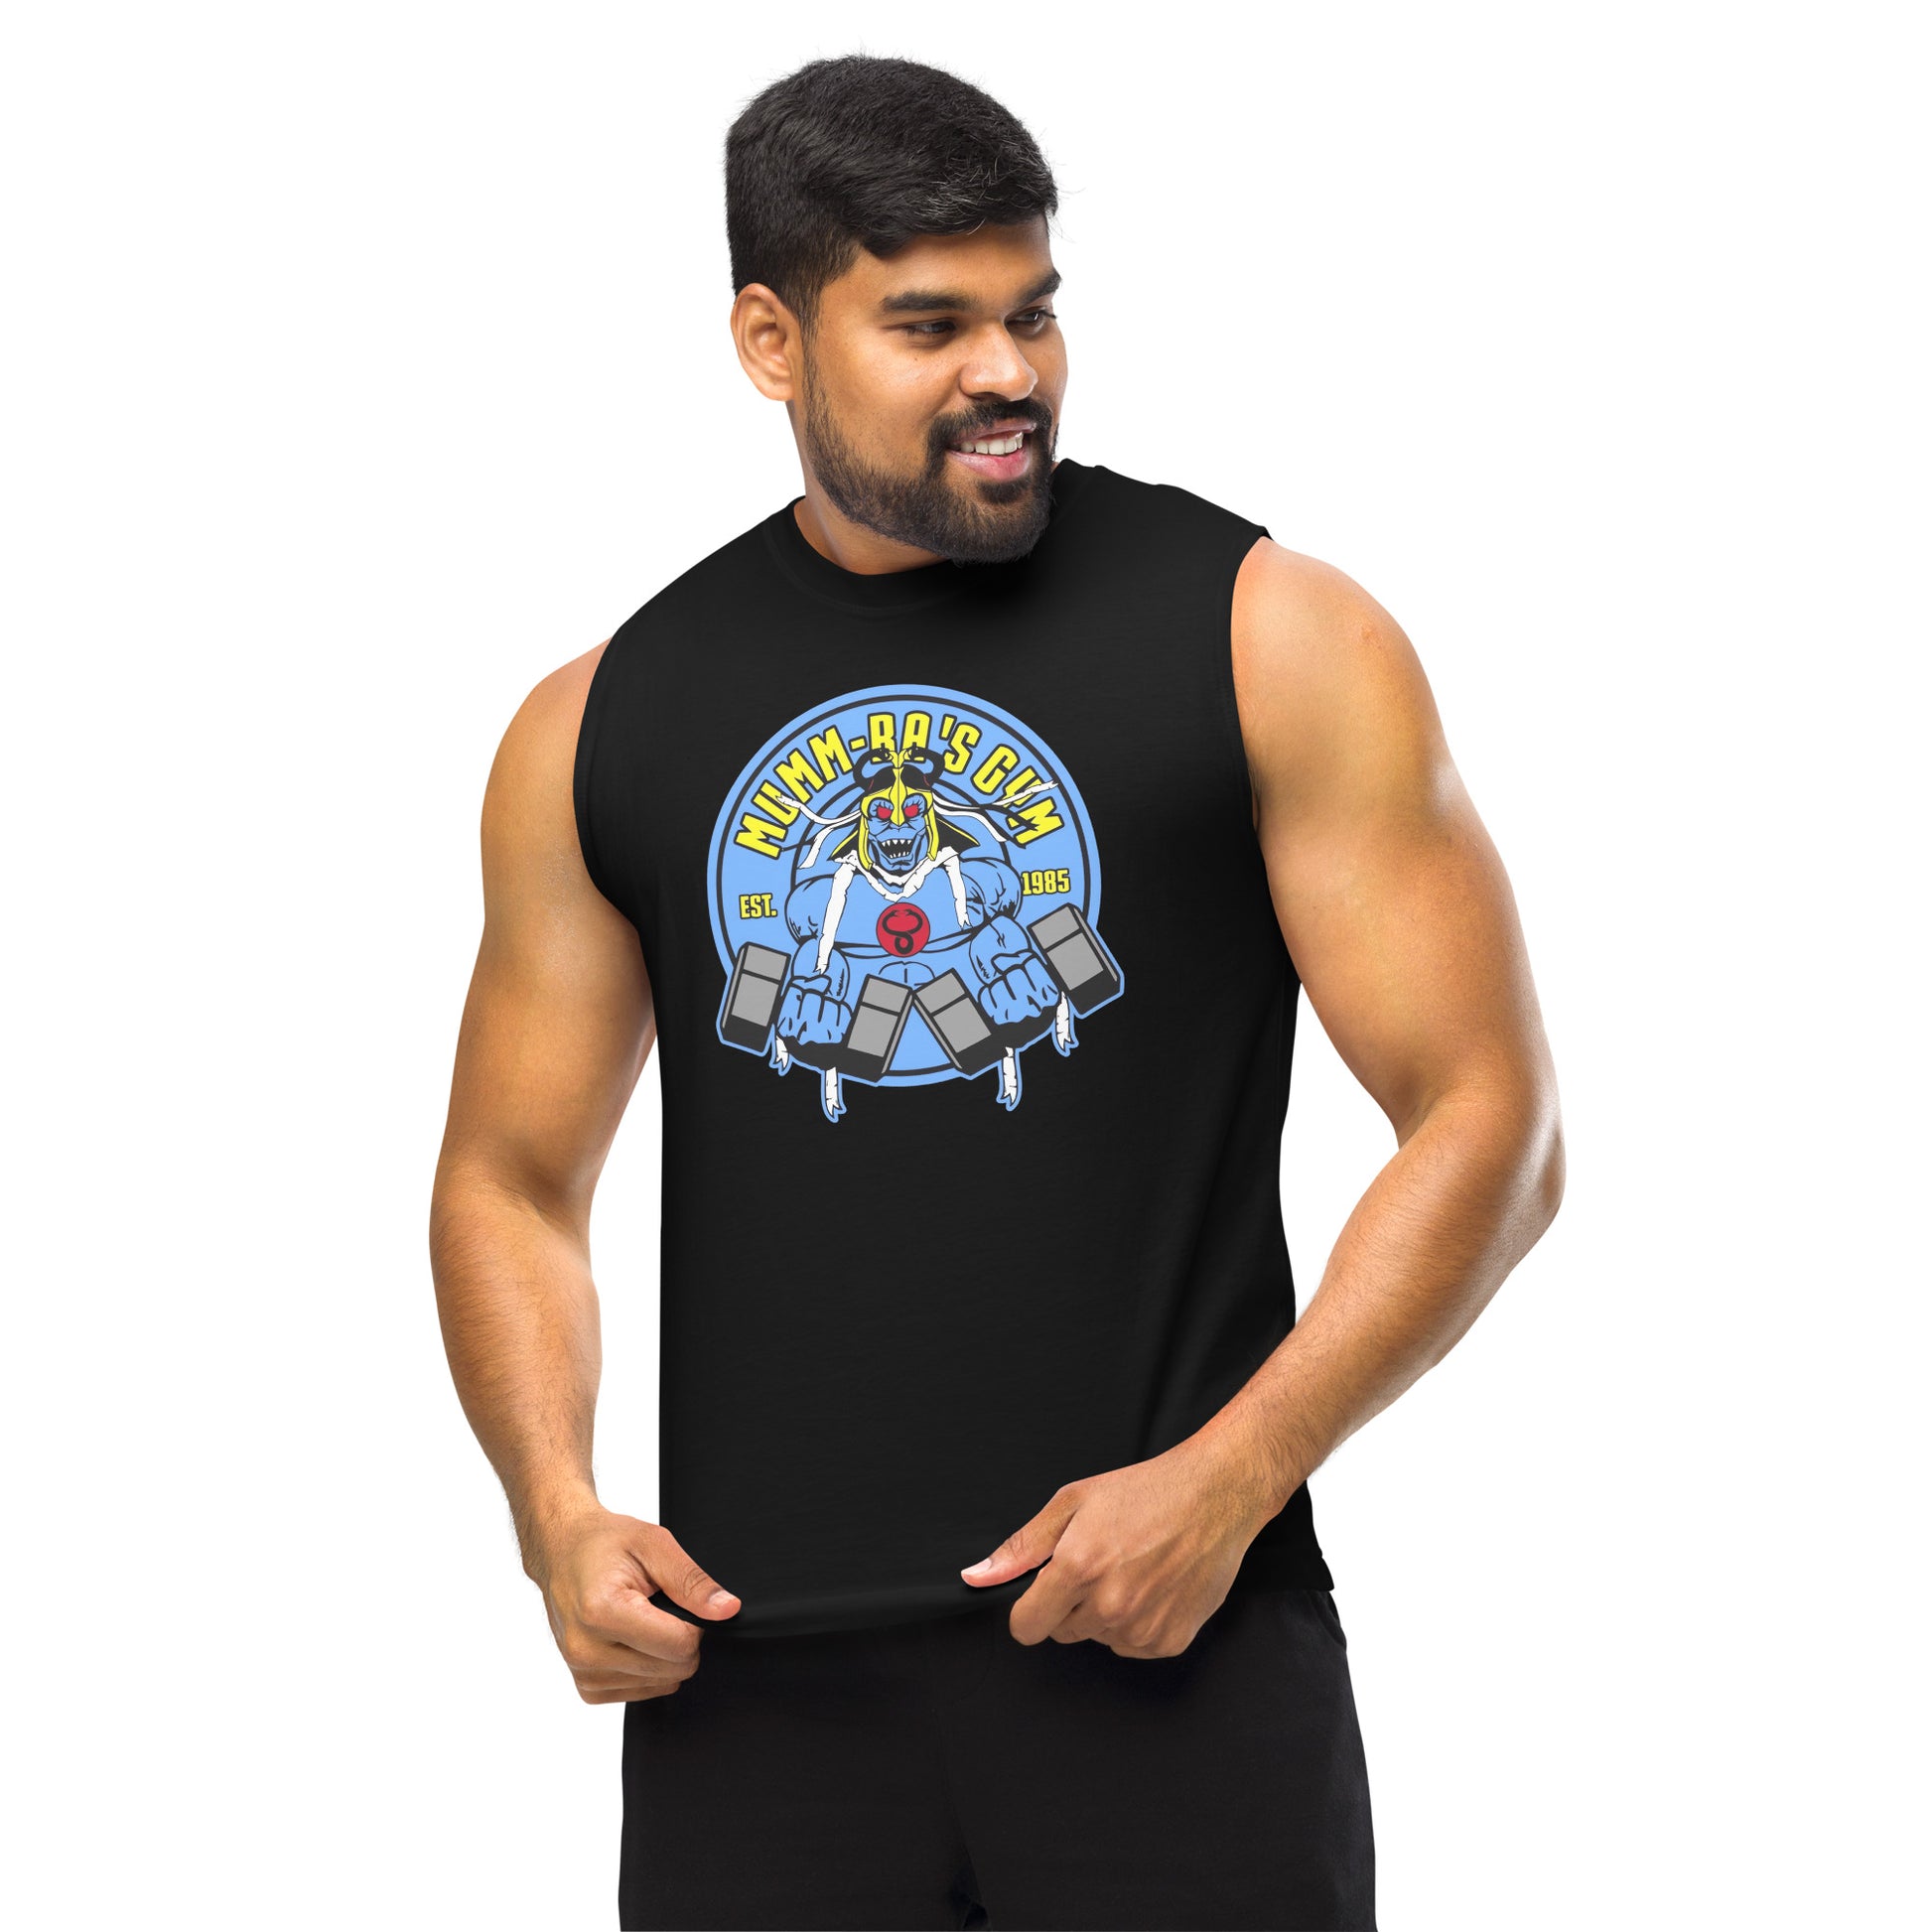 Camiseta sin mangas perfecta para entrenar, Camiseta Mumm- Ra Gym comprala en línea y experimenta el mejor servicio al cliente.